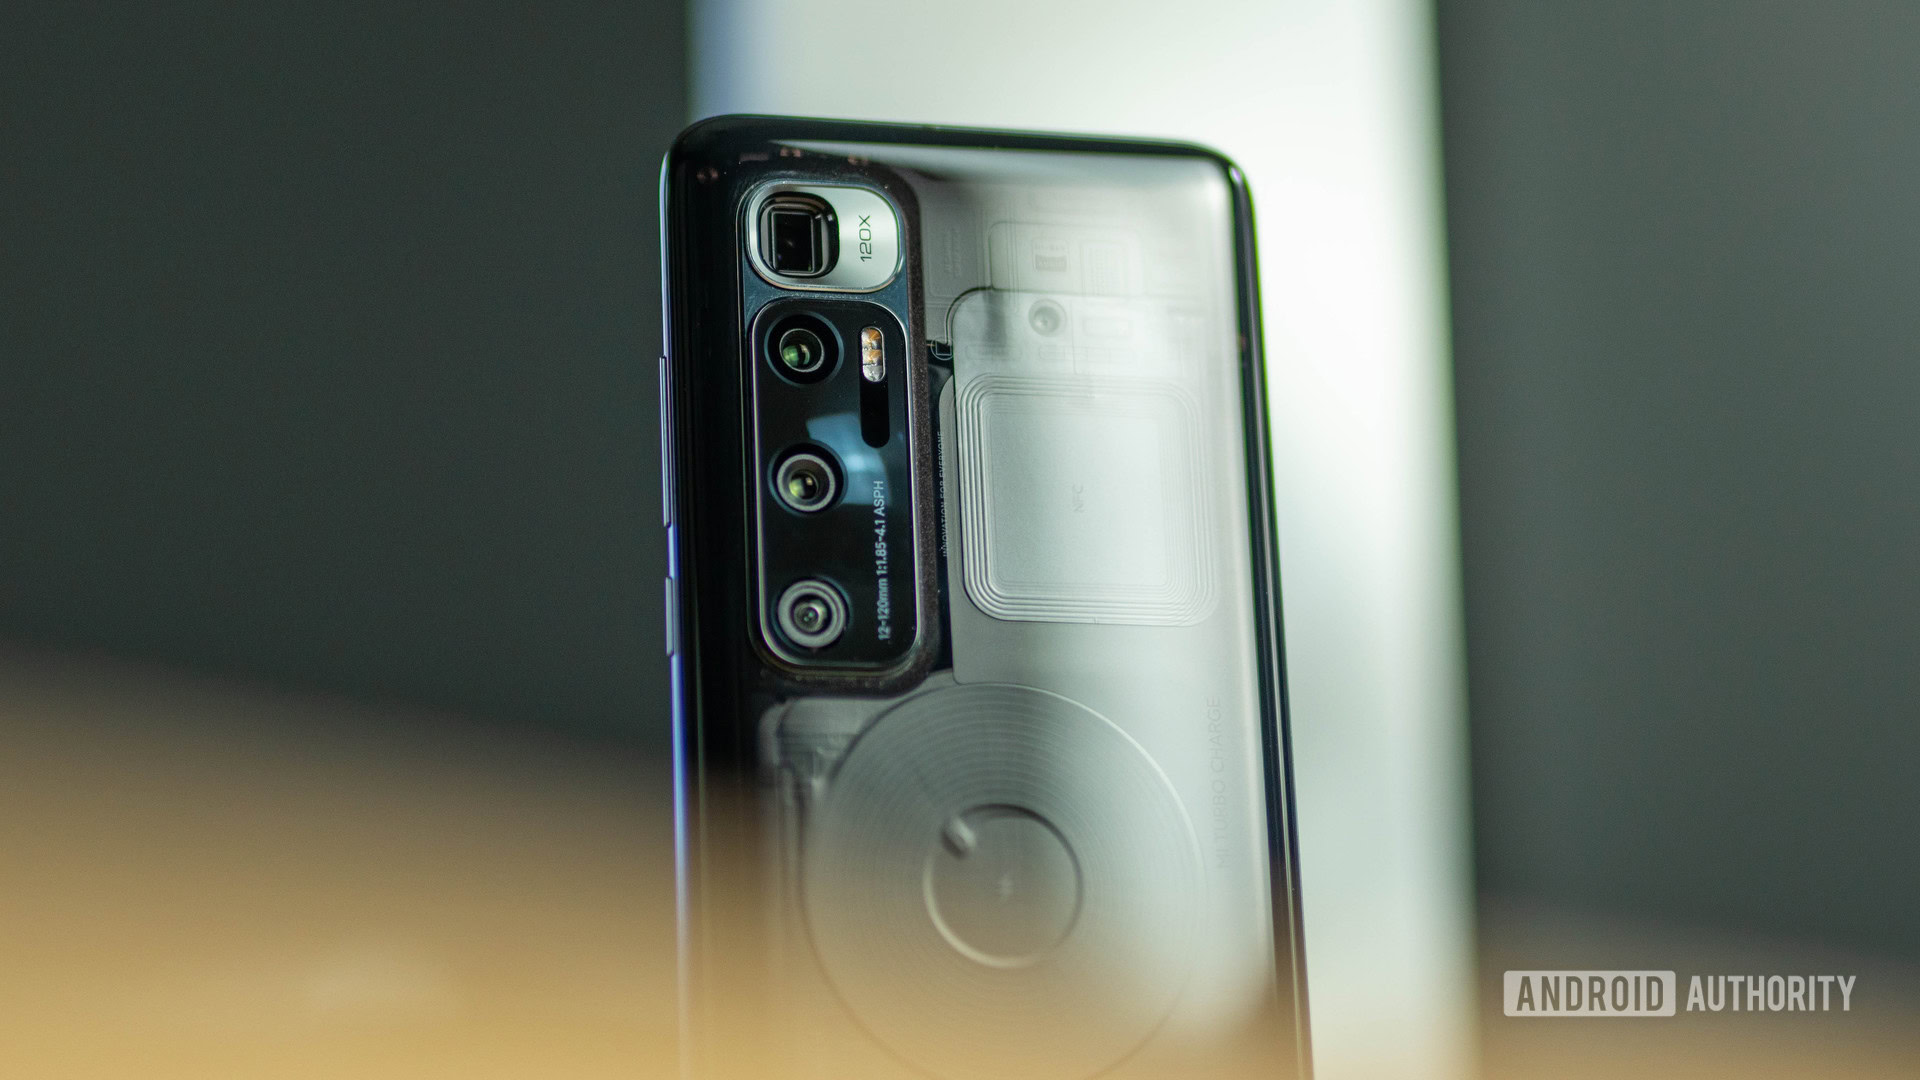 Xiaomi Mi 10 Ultra camera tested: Can it match the best camera phones?